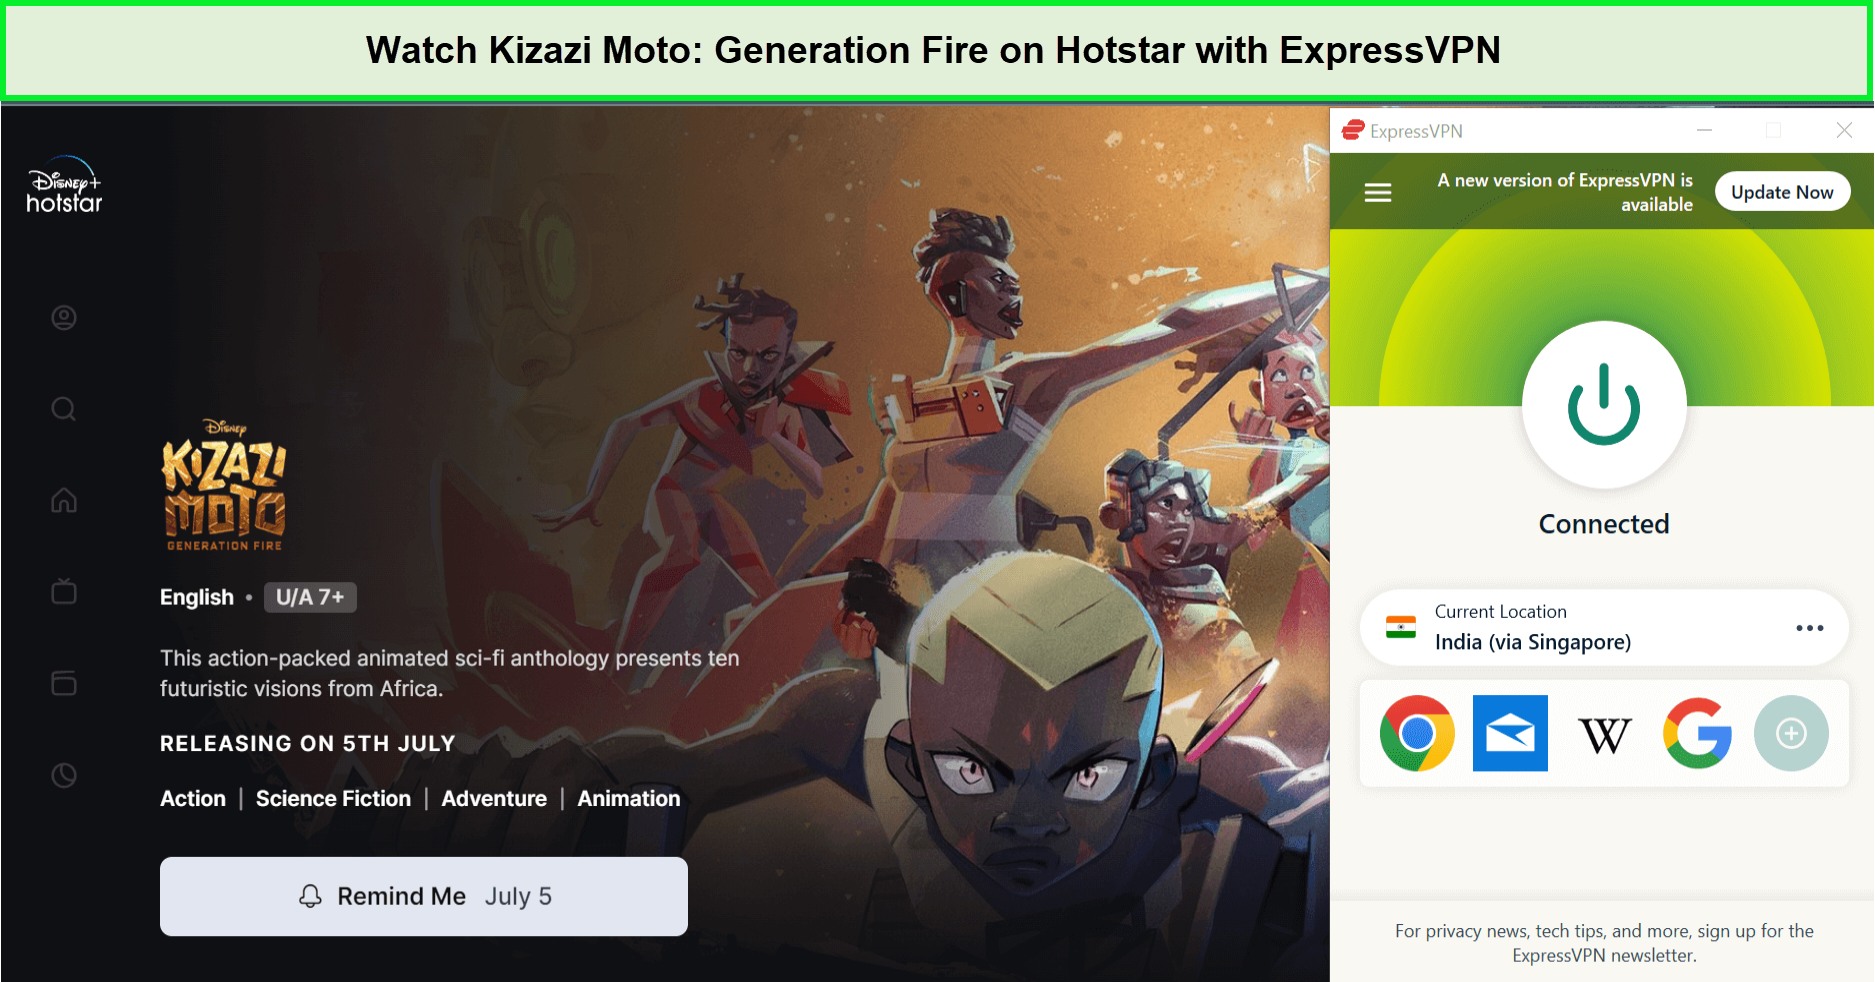 Watch-Kizazi-Moto-Generation-Fire-in-South Korea-on-Hotstar-with-ExpressVPN